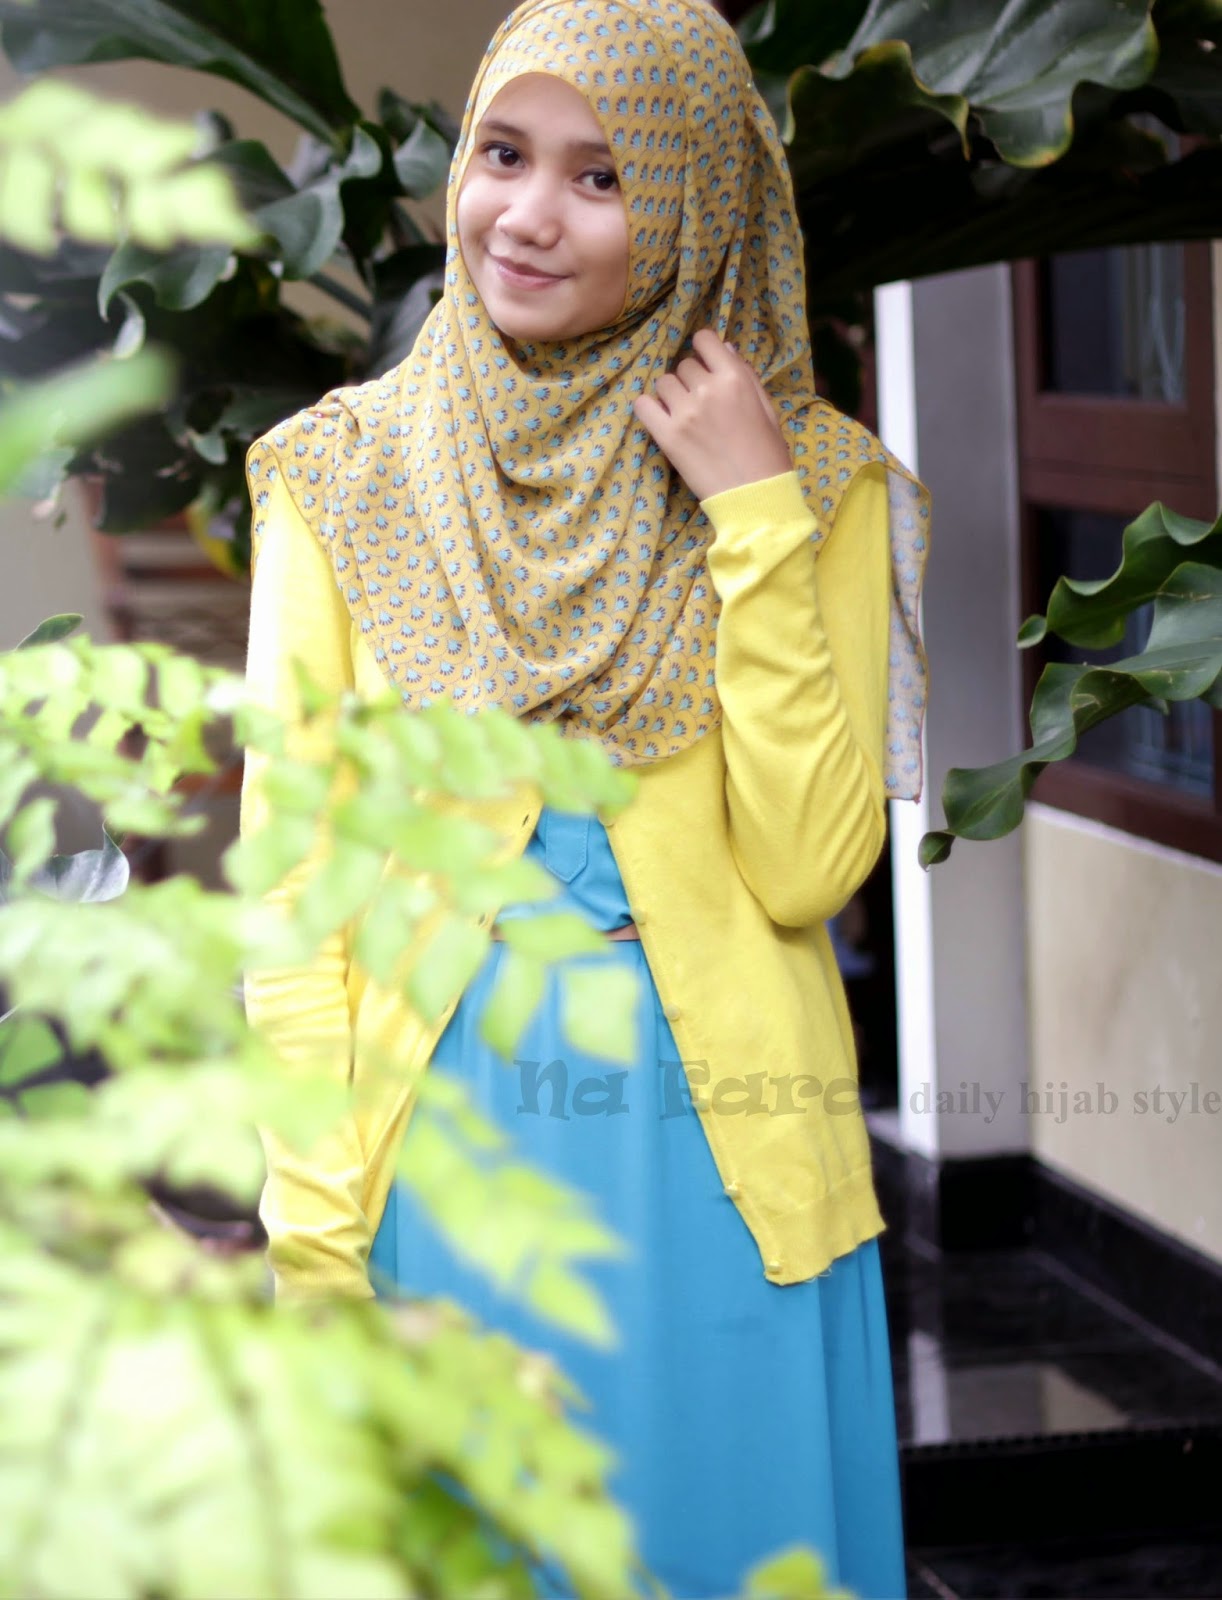 NA FARA daily hijab style maxi dress polos 